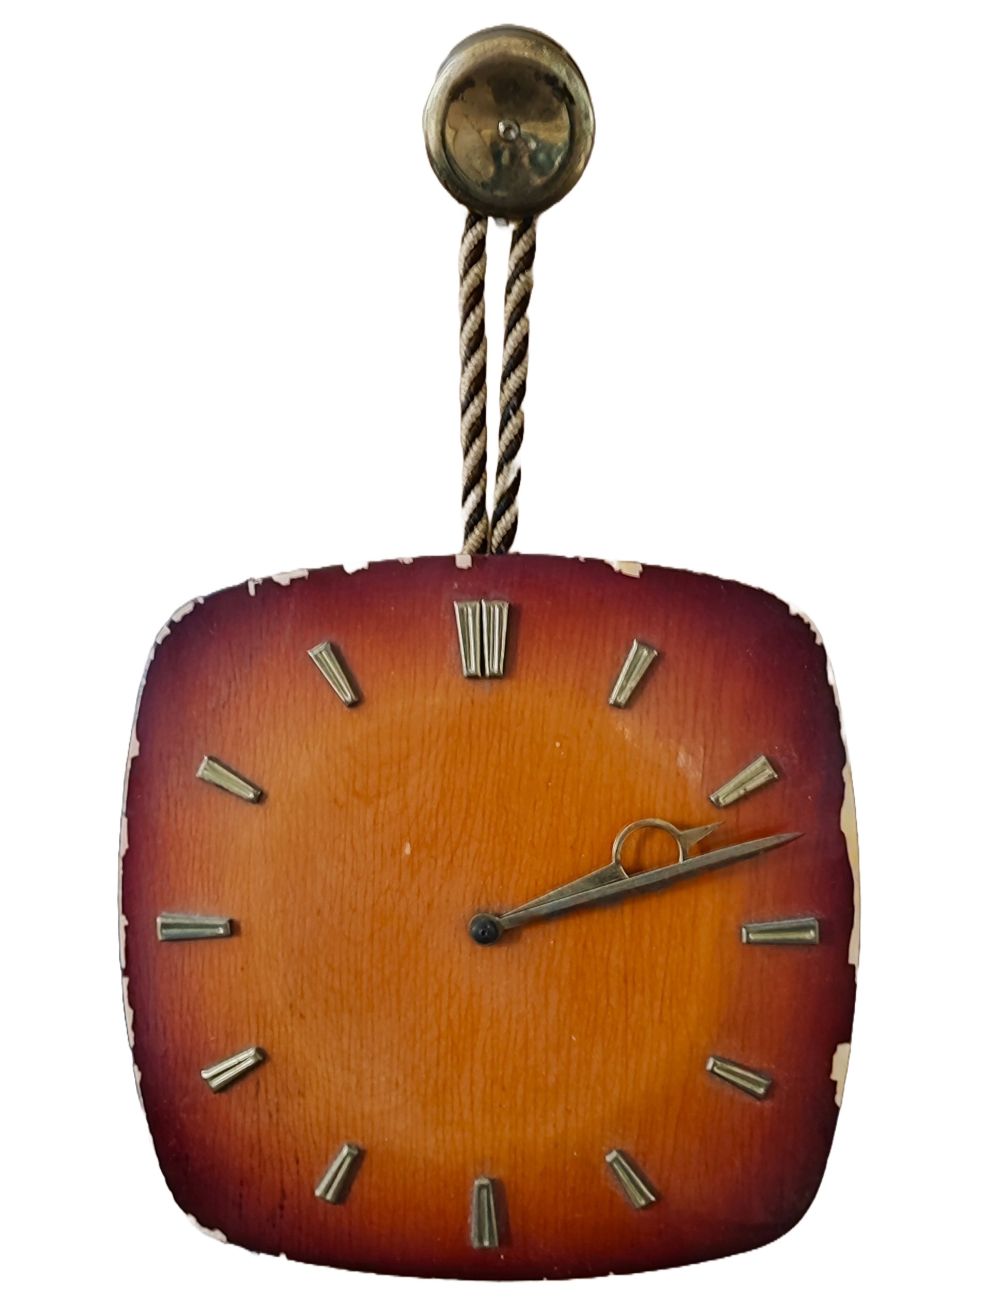 Zegar ścienny modernistyczny nakręcany lata 60